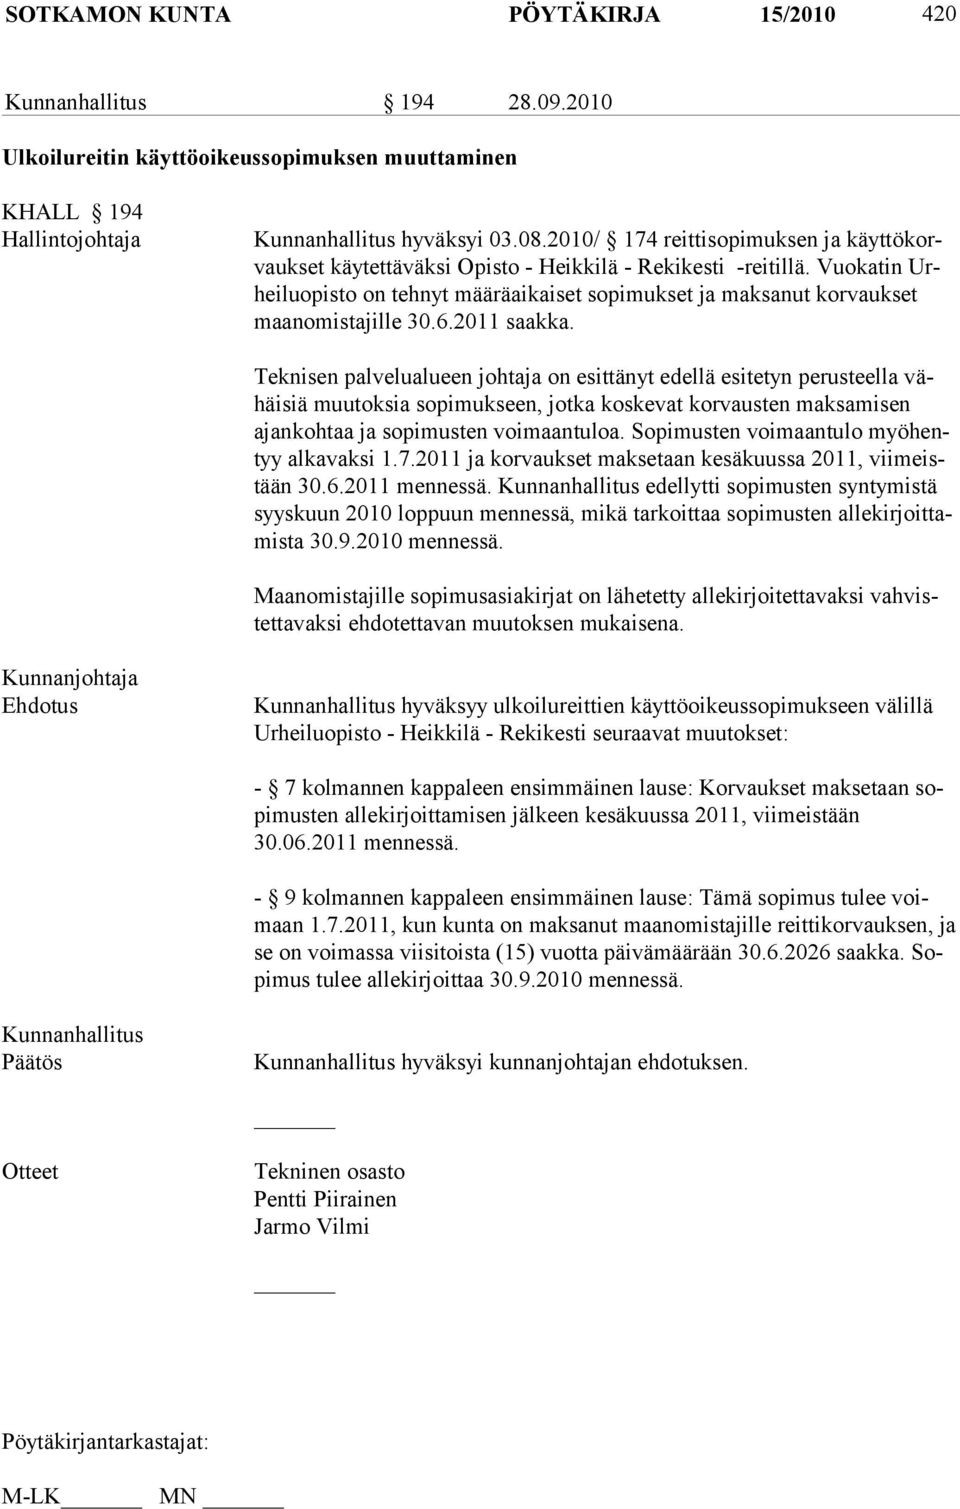 Vuokatin Urheiluopisto on tehnyt määräaikaiset sopimukset ja maksanut korvaukset maanomistajille 30.6.2011 saakka.